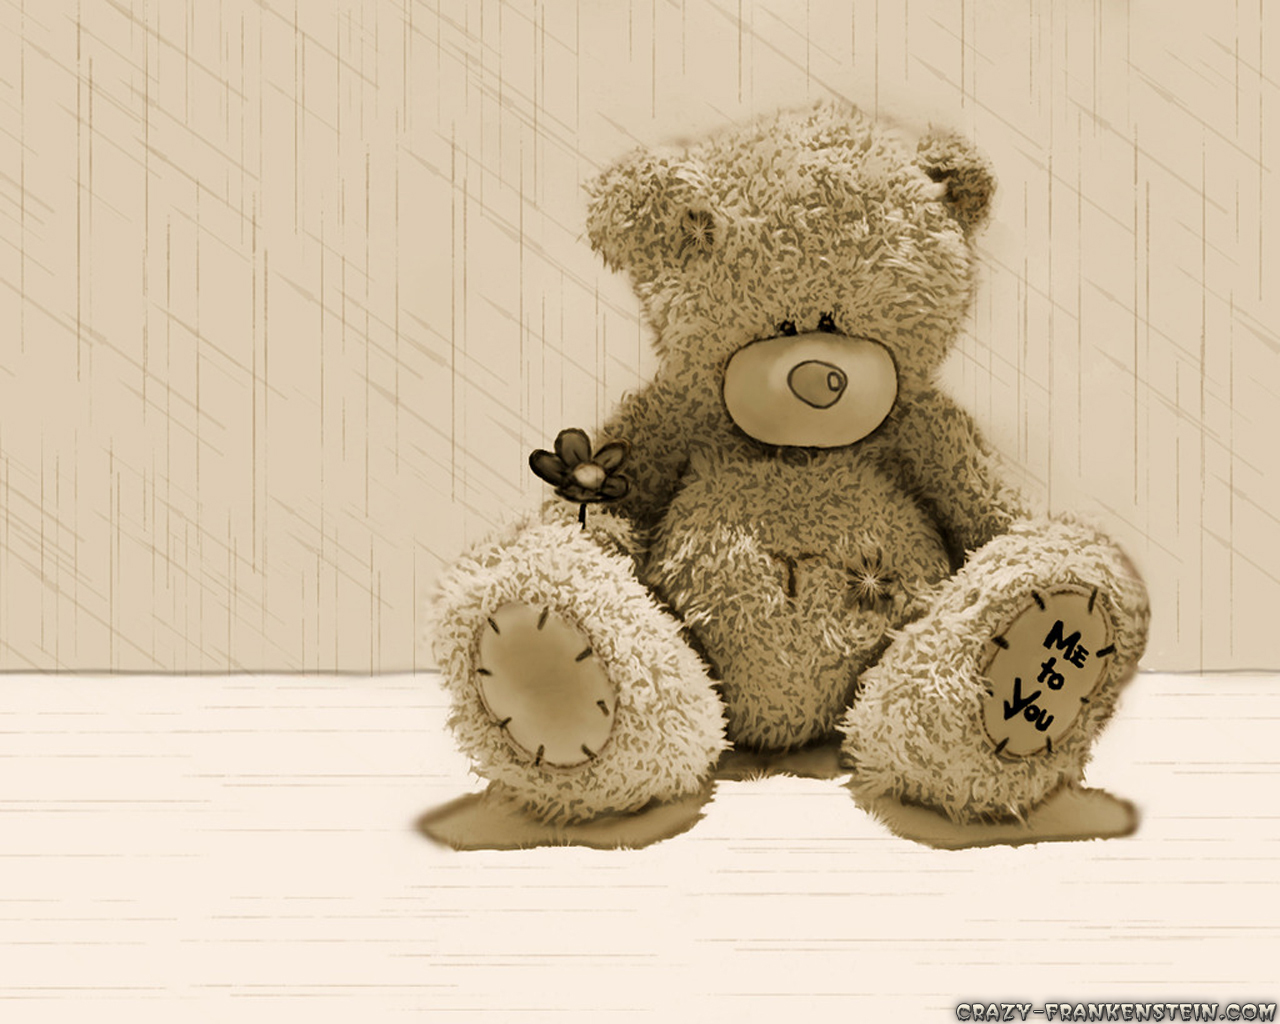 Lovely Teddy Bear Wallpaper Image The